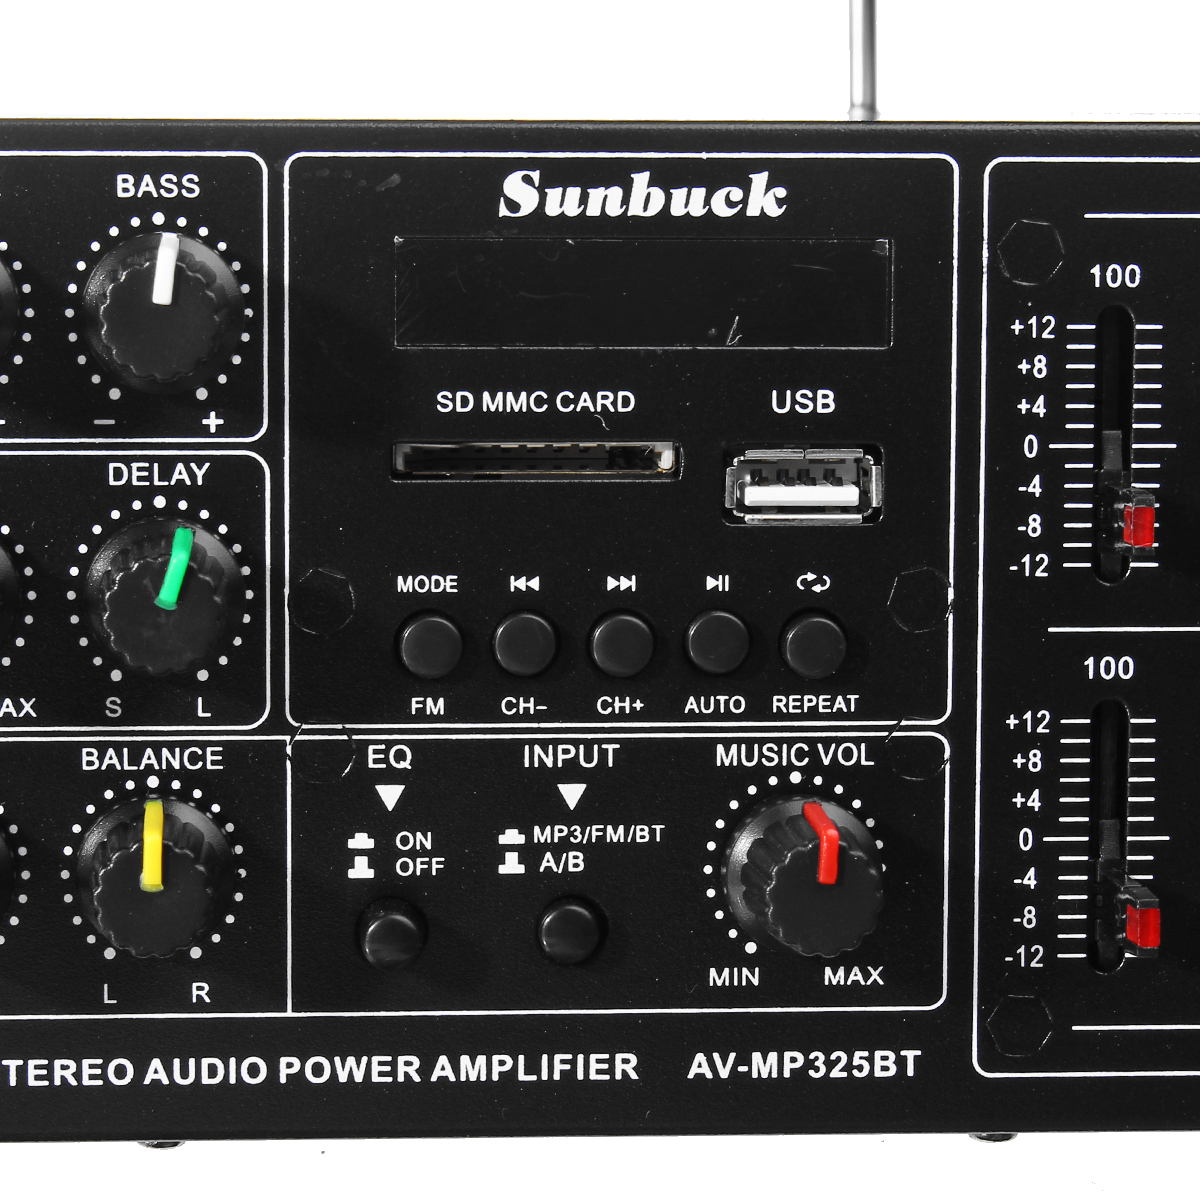 Av mp326bt. Усилитель Sunbuck 325 BT. Sunbuck 326bt усилитель. Sunbuck av-mp326bt Bluetooth. Av-mp325bt усилитель Sunbuck.